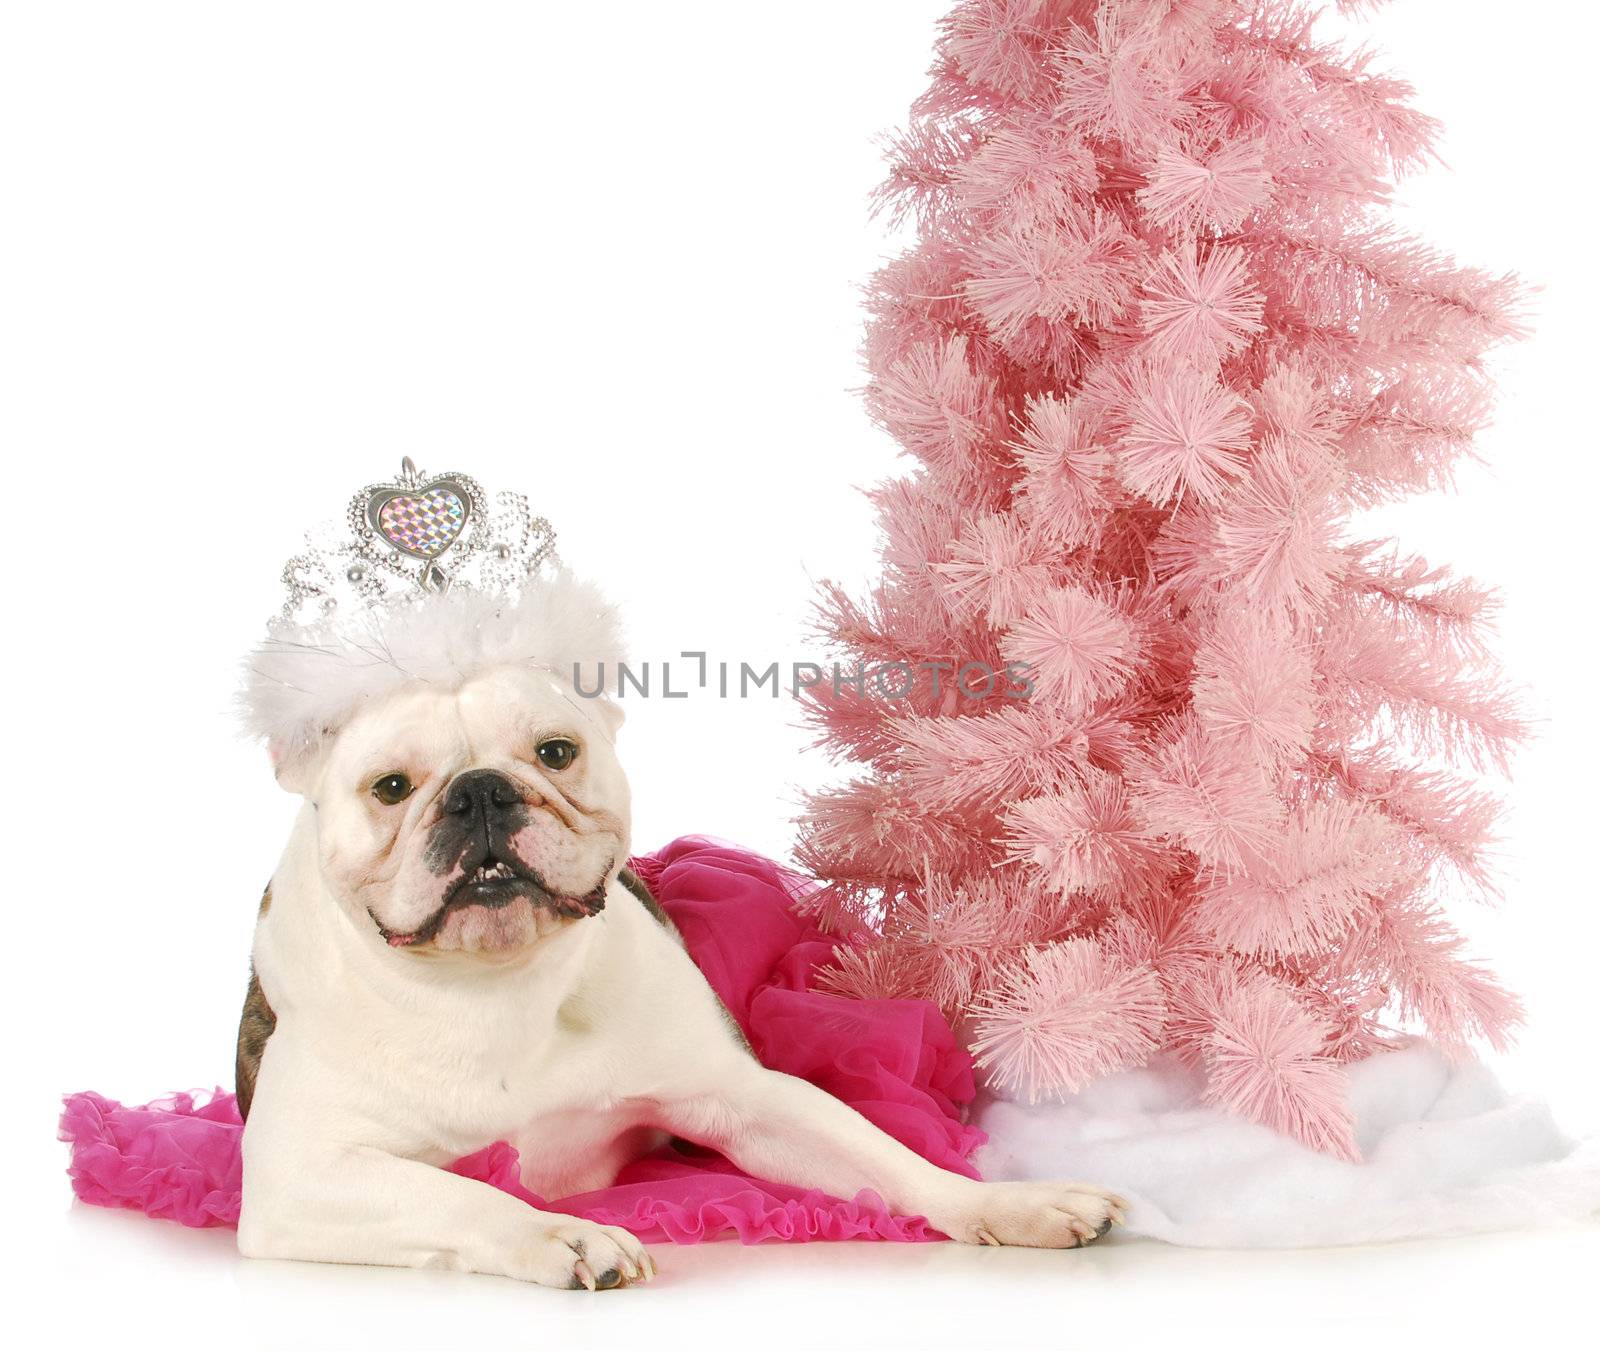 princess dog - english bulldog dressed up like a princess laying beside a pink tree